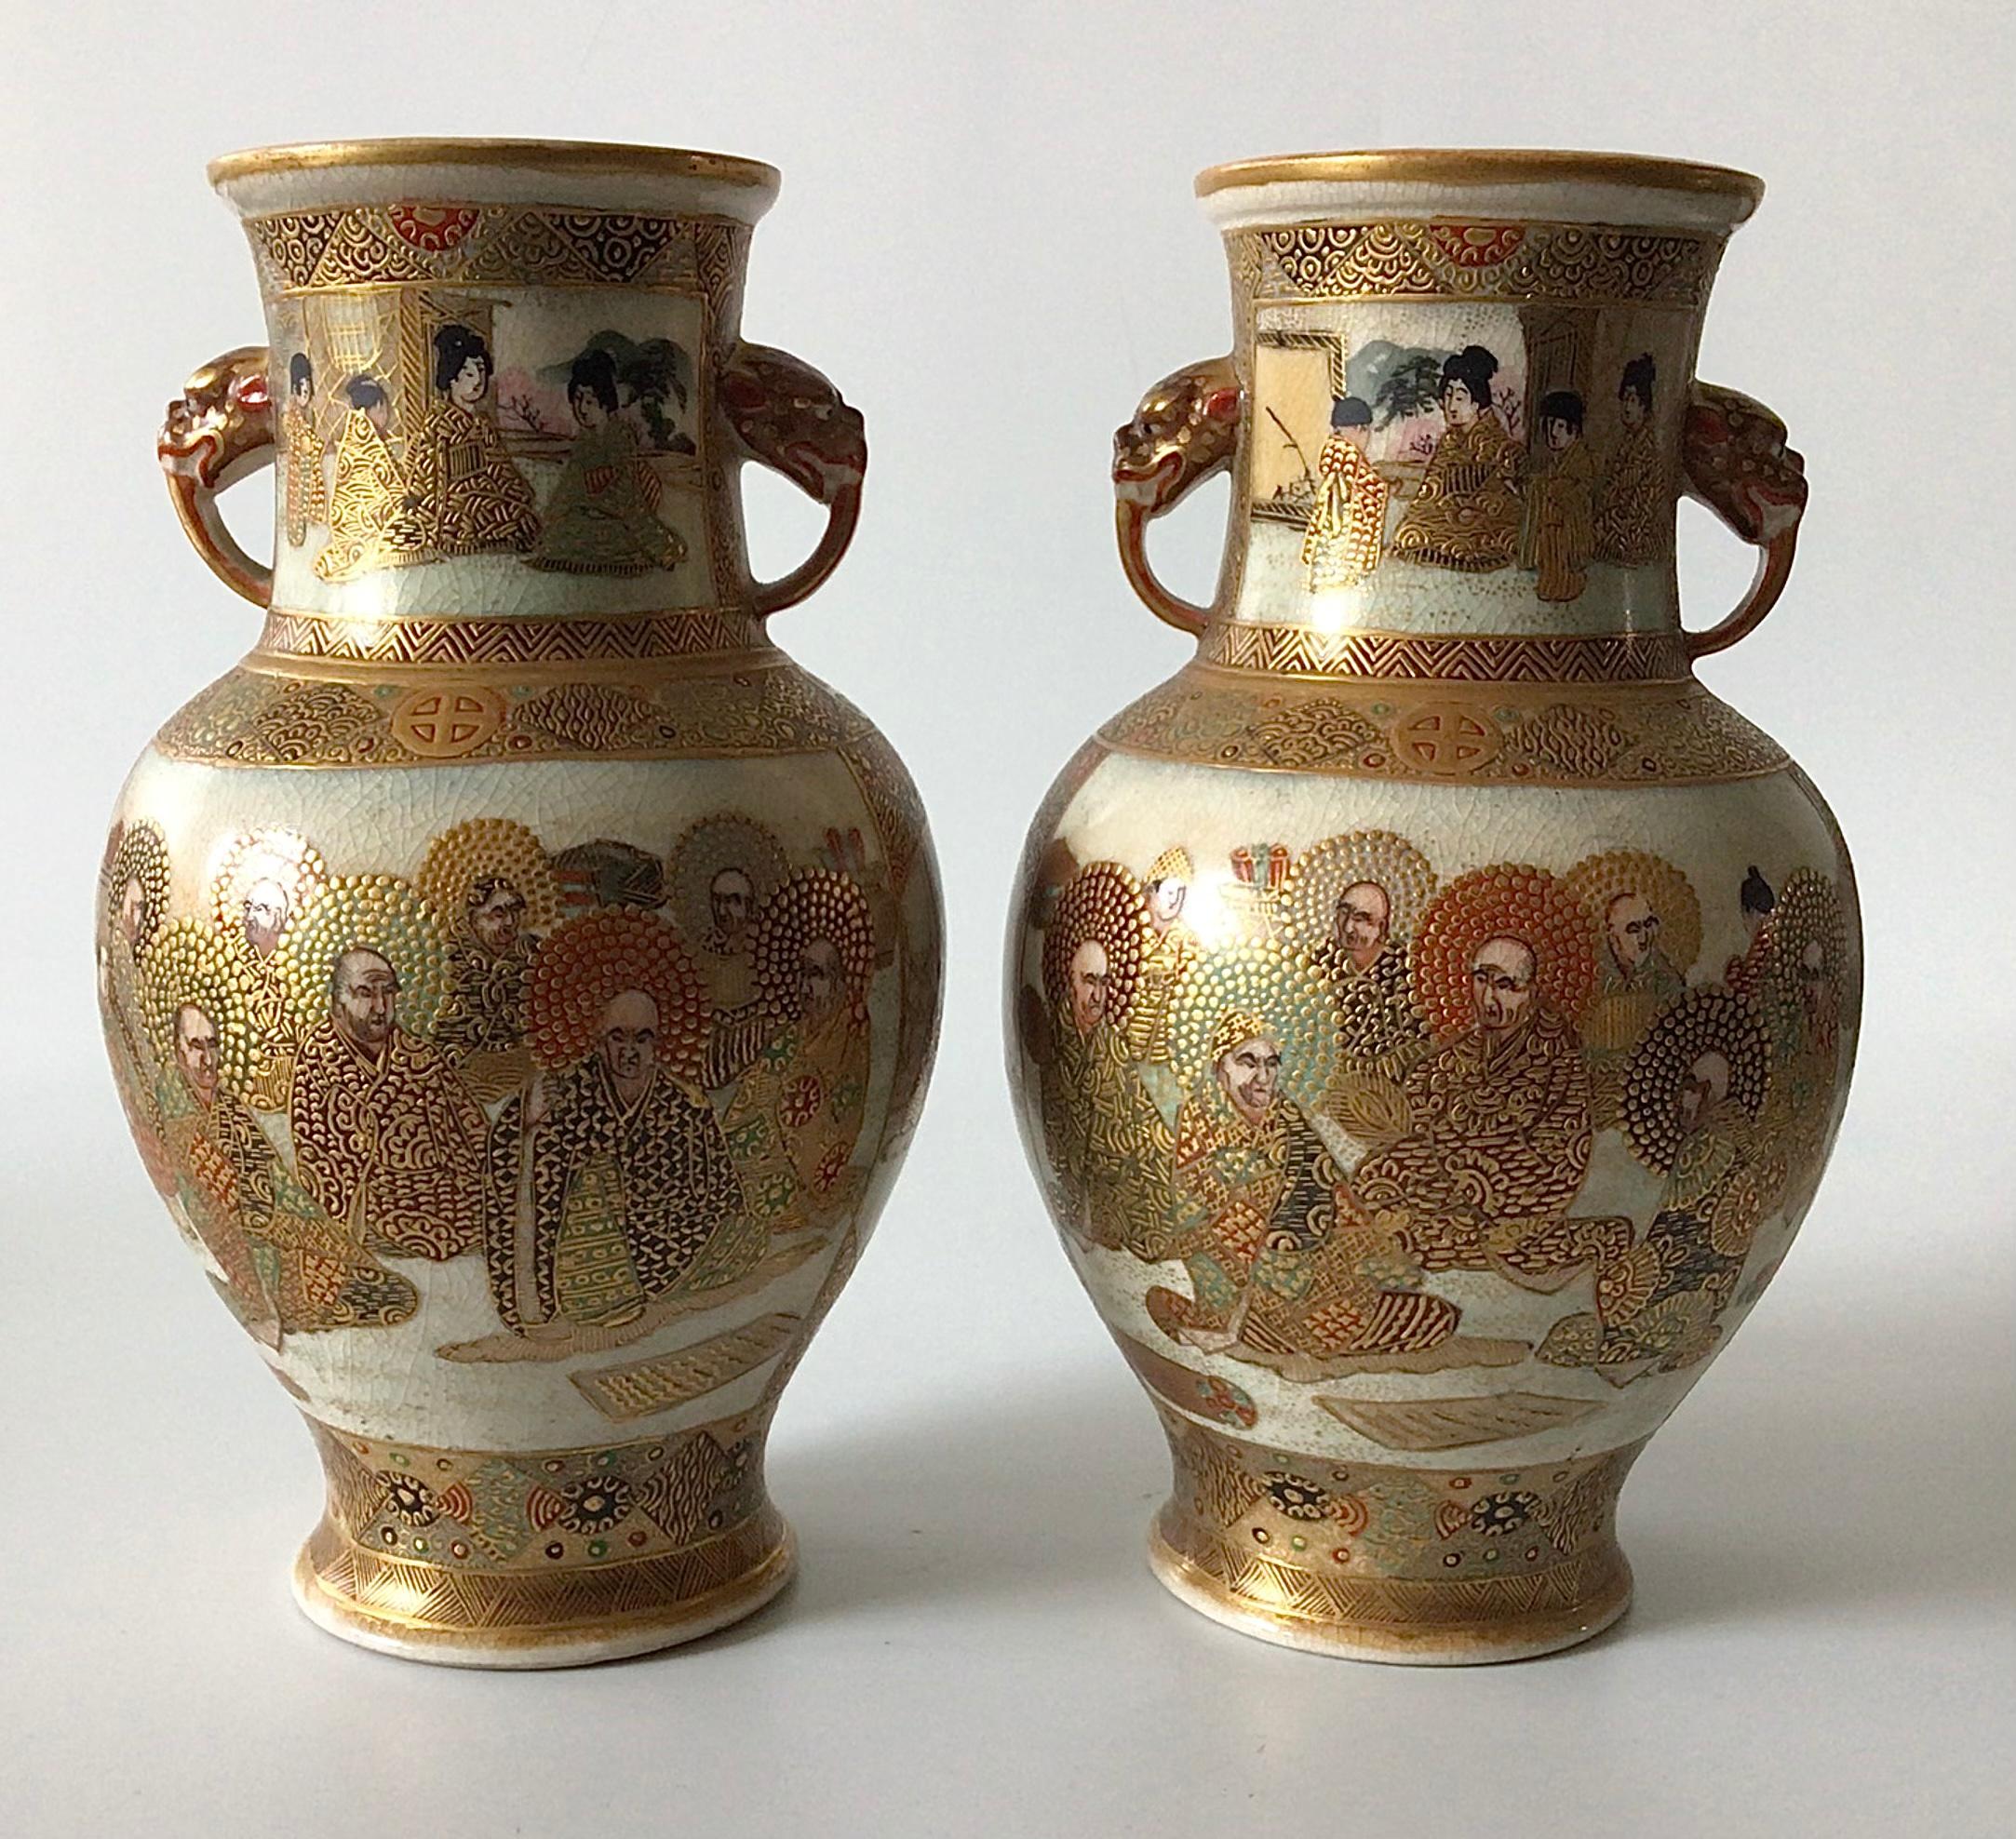 Paire de vases Satsuma antiques avec des poignées en forme d'animaux et une étonnante décoration peinte à la main. Chaque pièce est signée par l'artiste. Les vases mesurent 7,5 pouces de haut sur 4,5 pouces de large. 

Après la popularité de la